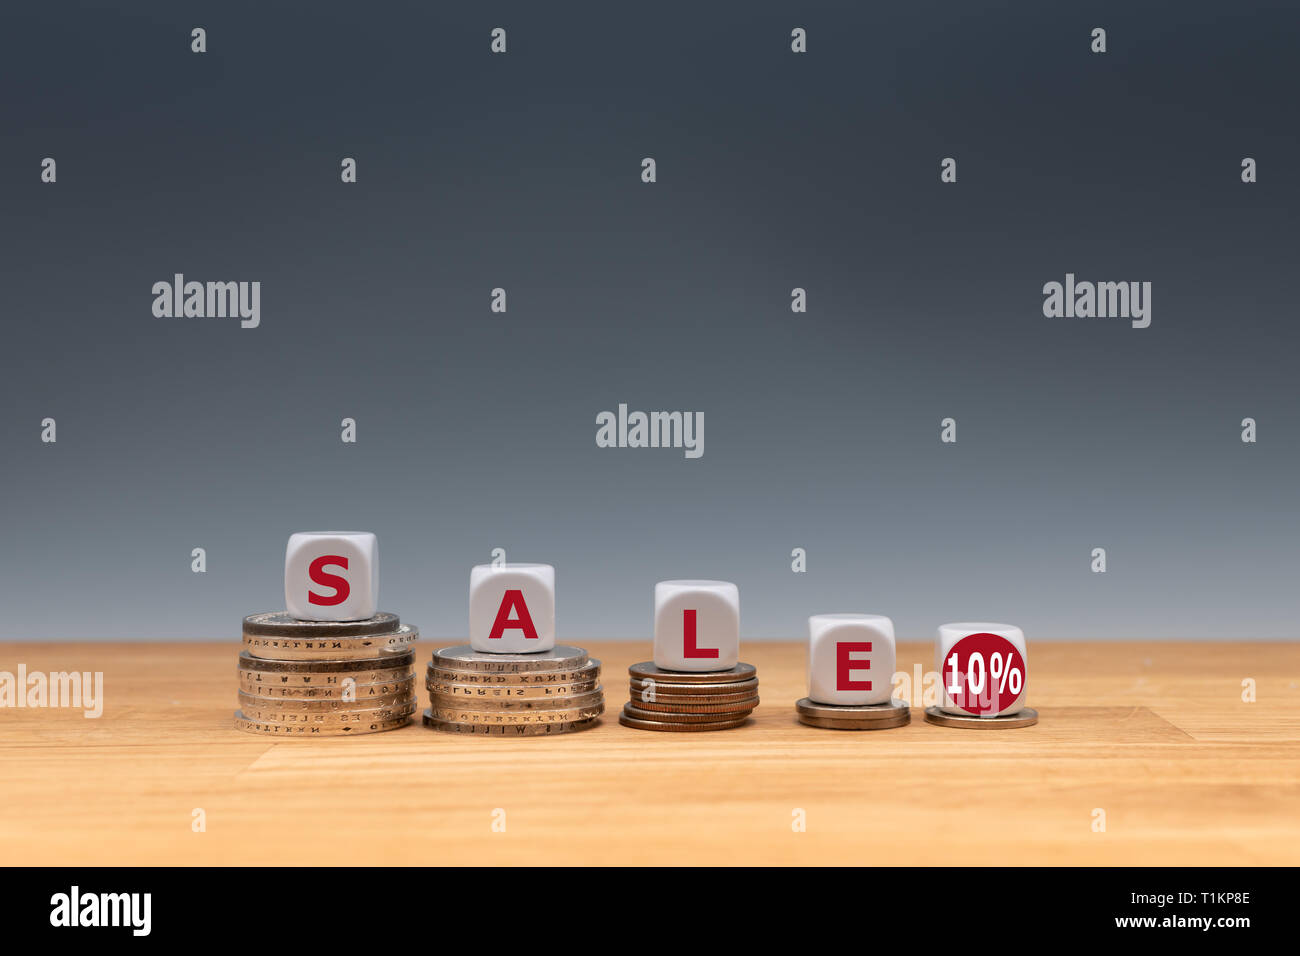 Simbolo per una vendita con un 10 % di sconto. Dadi posti sulle monete formano l'espressione 'sale 10%'. Foto Stock